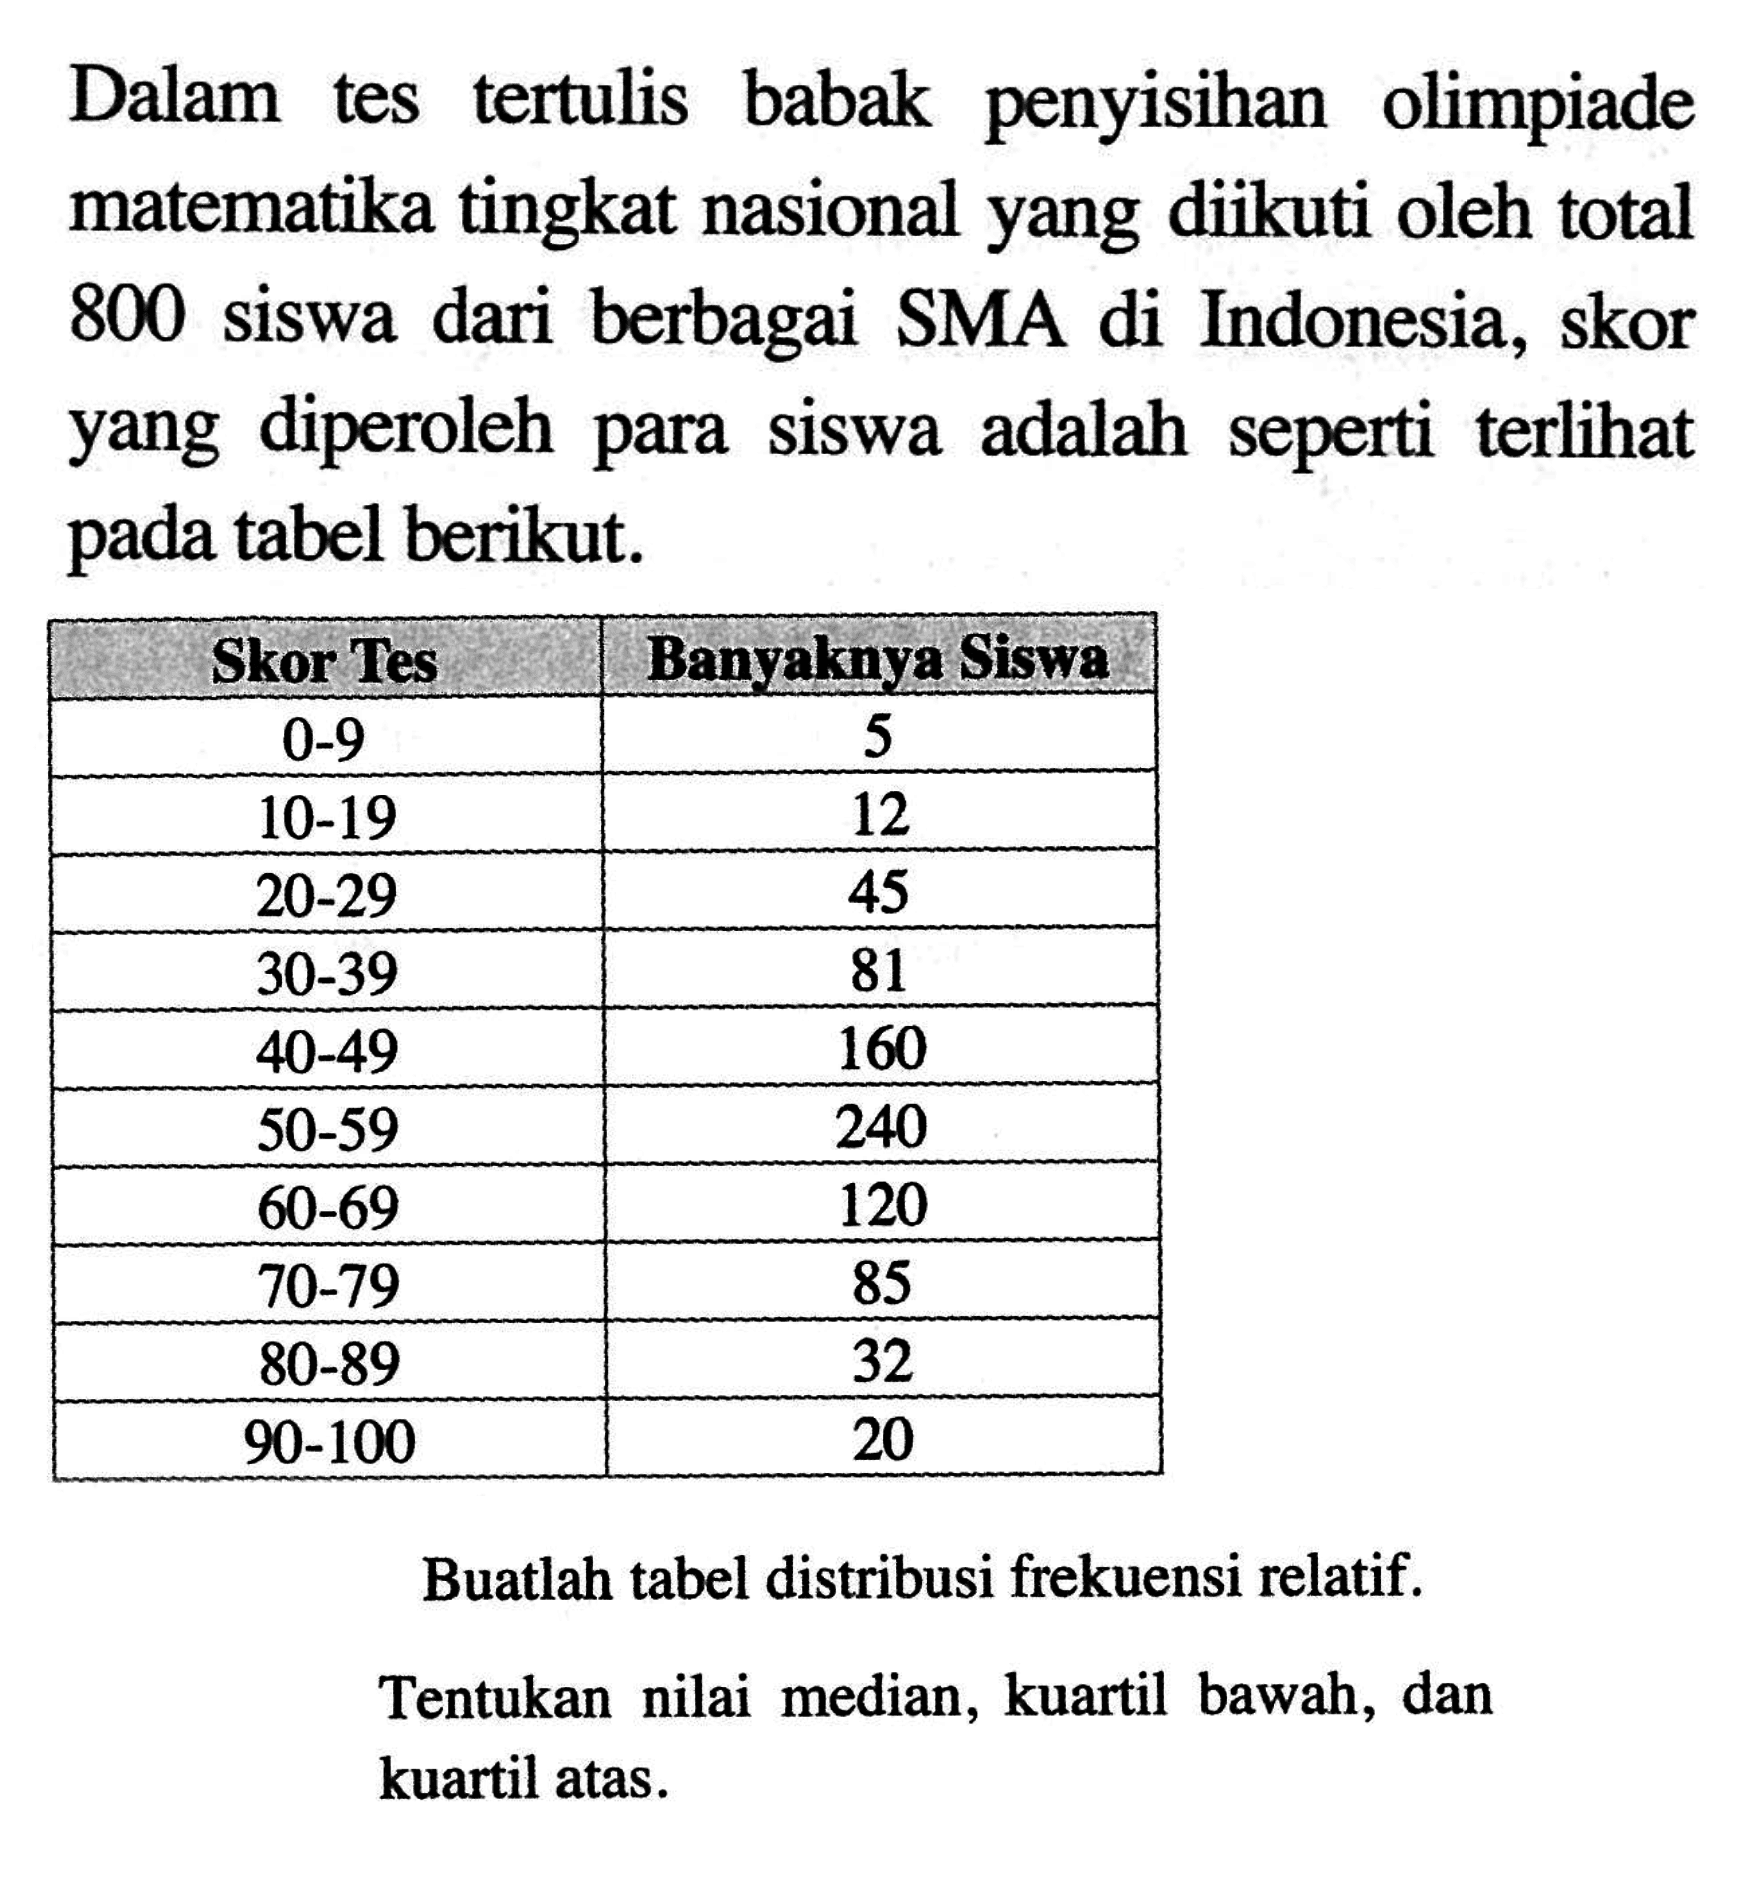 Dalam tes tertulis babak penyisihan olimpiade matematika tingkat nasional yang diikuti oleh total 800 siswa dari berbagai SMA di Indonesia, skor yang diperoleh para siswa adalah seperti terlihat pada tabel berikut. Skor Tes Banyaknya Siswa 0-9 5 10-19 12 20-29 45 30-39 81 40-49 160 50-59 240 60-69 120 70-79 85 80-89 32 90-100 20 Buatlah tabel distribusi frekuensi relatif. Tentukan nilai median, kuartil bawah, dan kuartil atas.